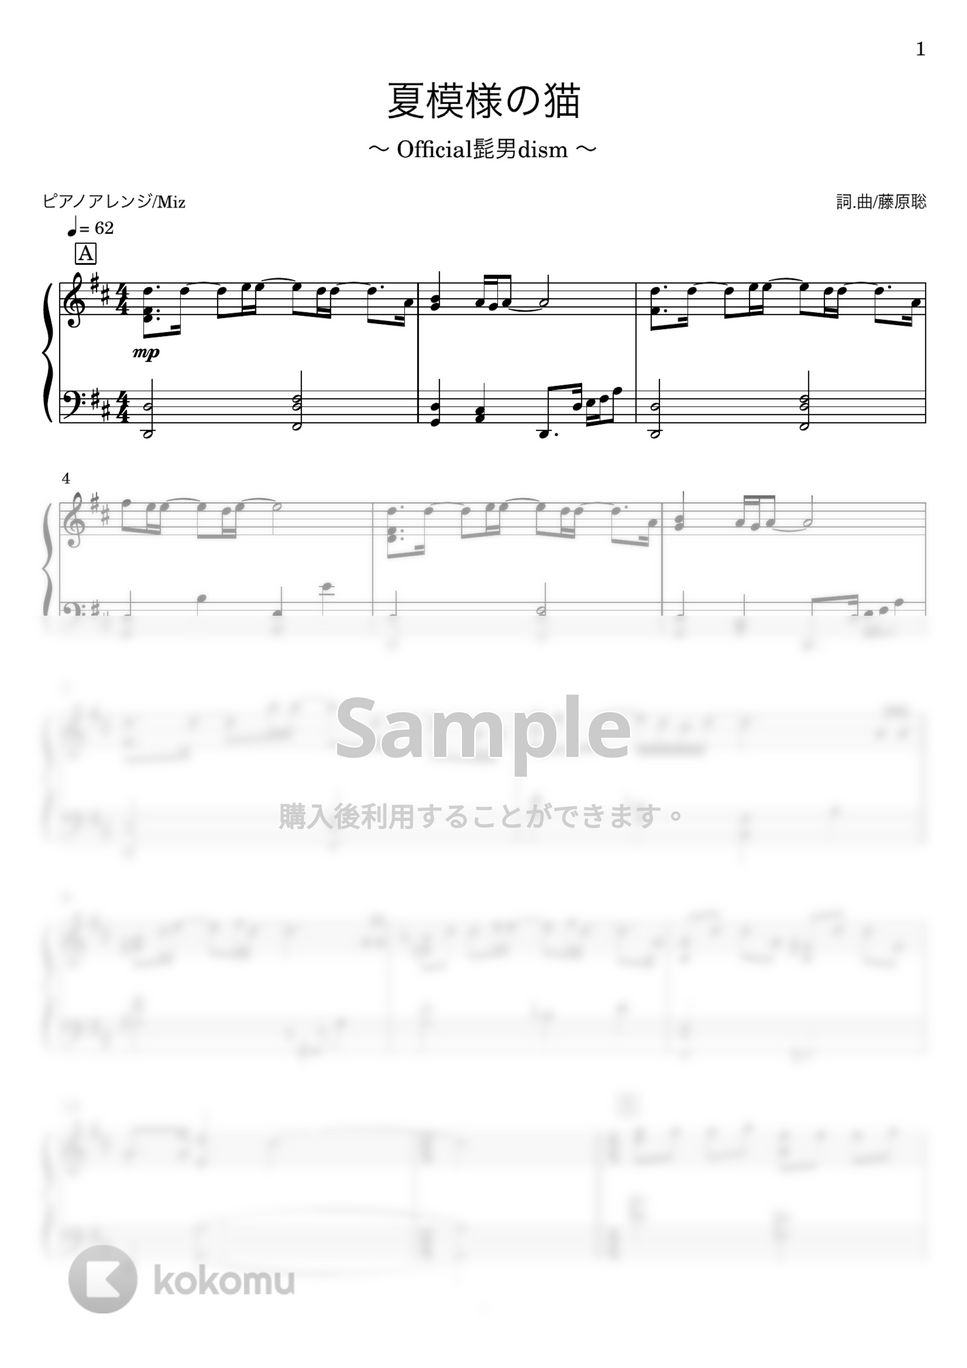 Official髭男dism - 夏模様の猫 (ピアノソロ) by Miz